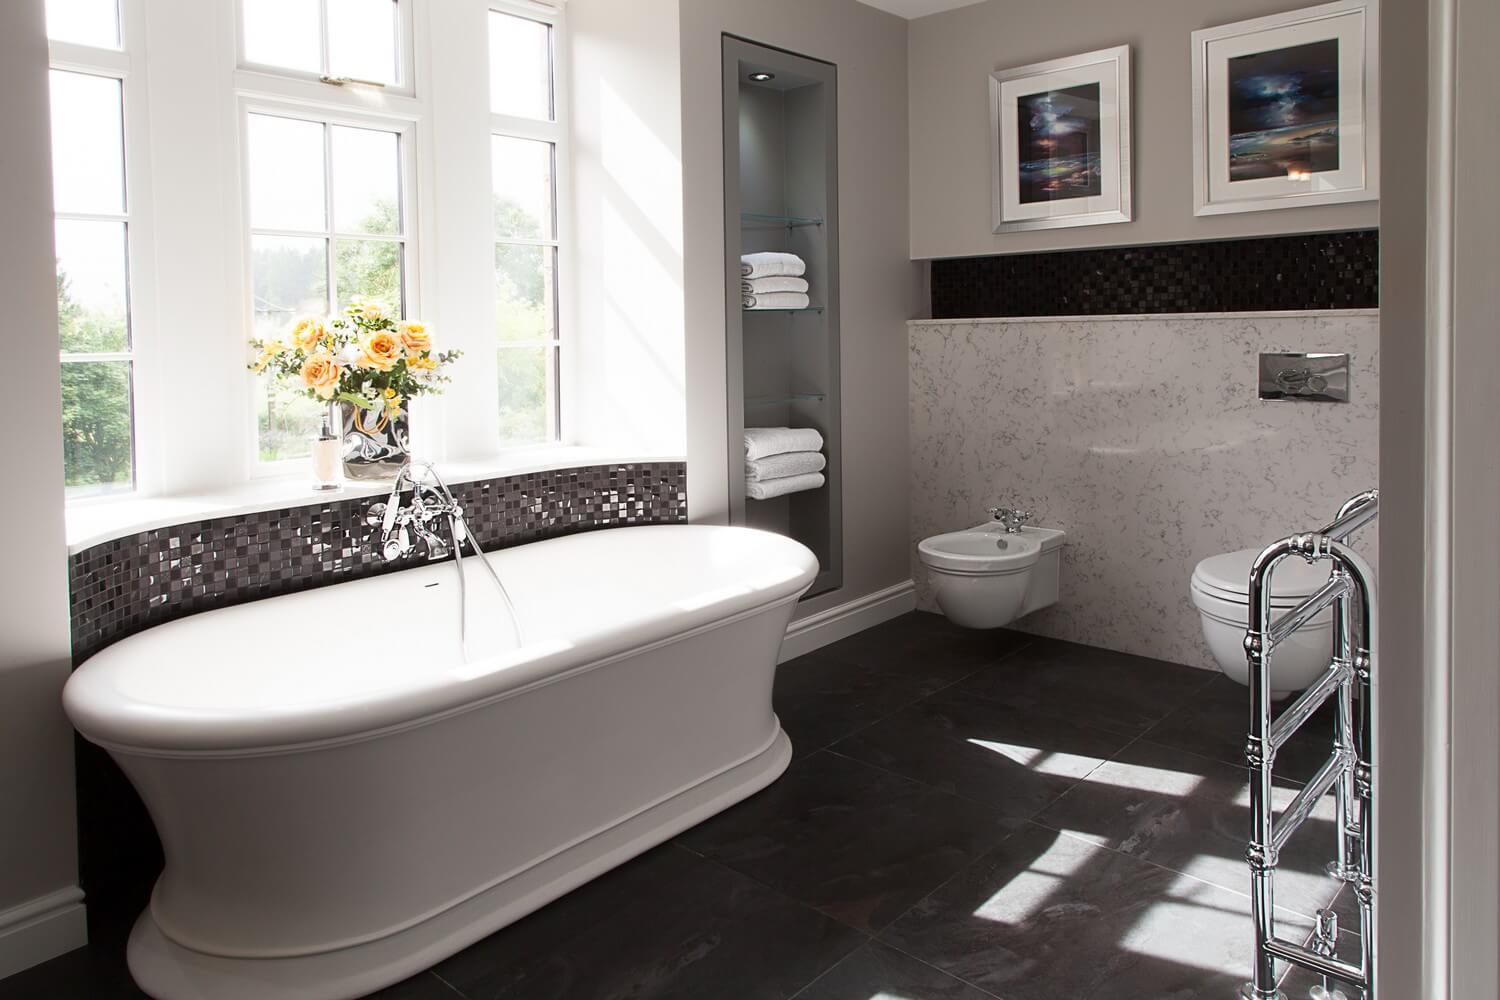 Gallery — BAGNODESIGN | Luxury Bathrooms Edinburgh | Bathroom Showroom ...